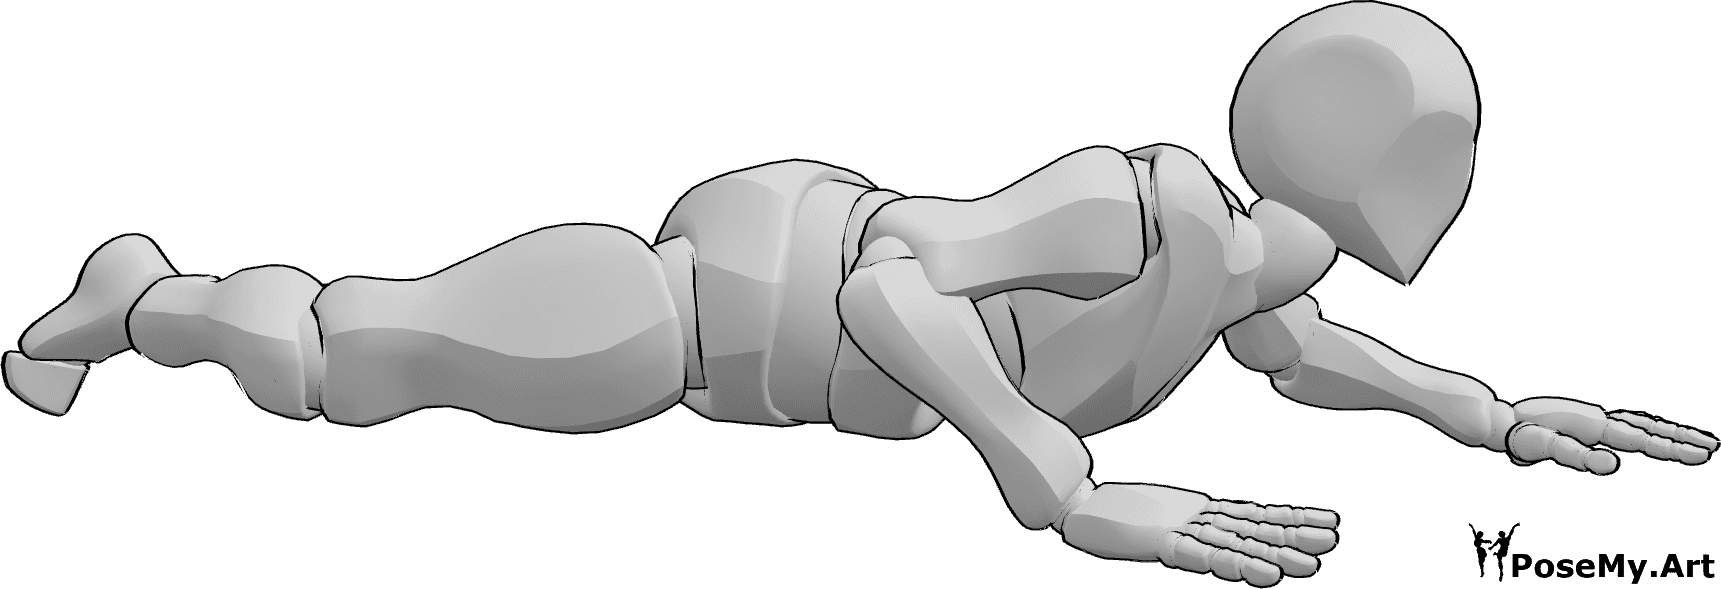 Posen-Referenz- Männlich kriechend Bauch Pose - Das Männchen krabbelt auf dem Bauch, in bodennaher Krabbelpose